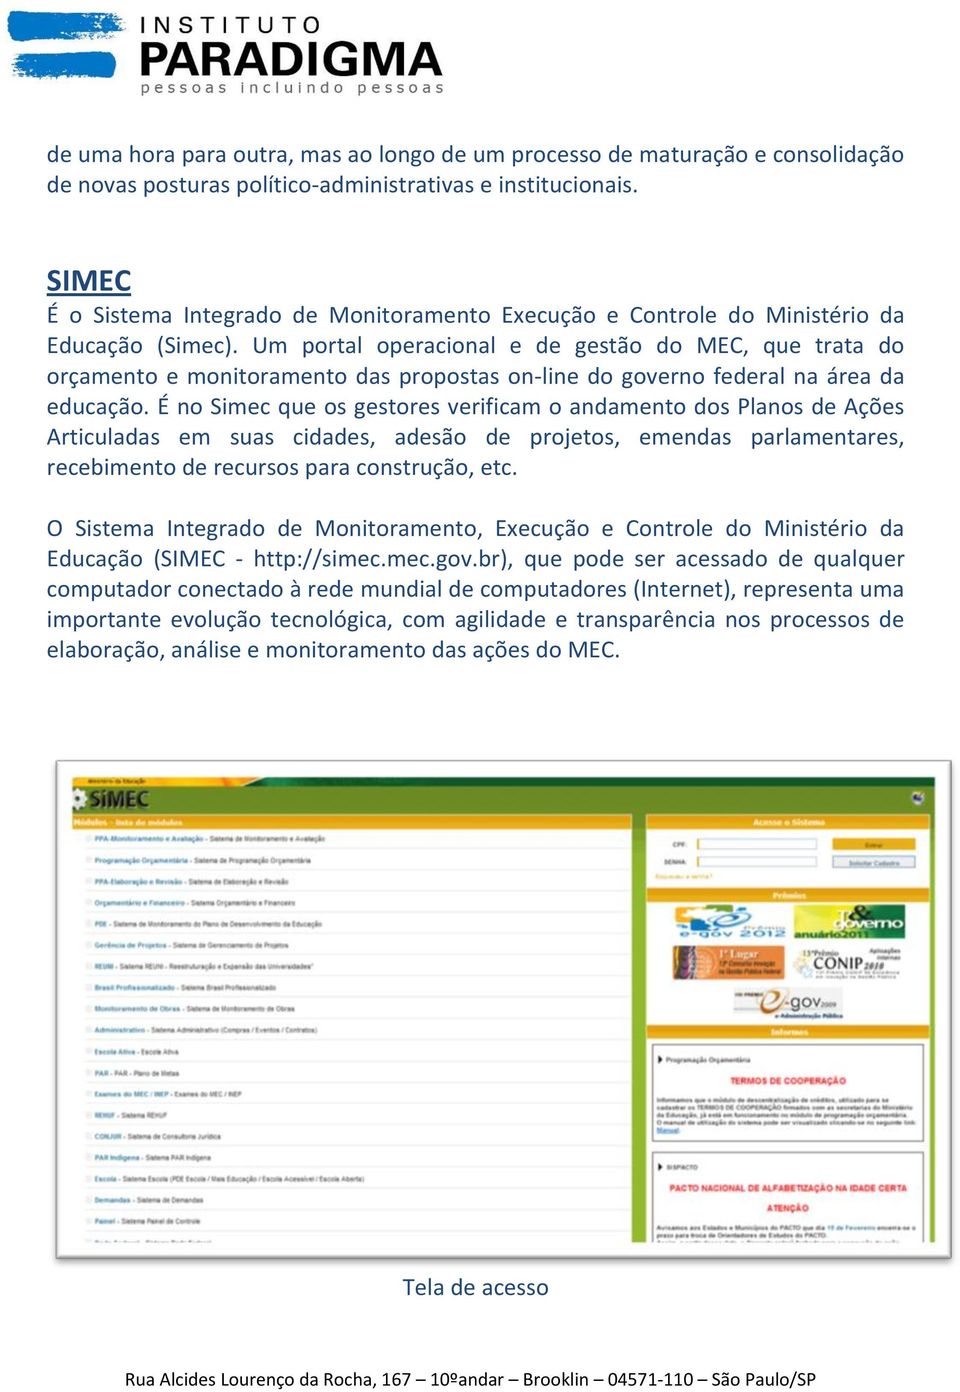 Um portal operacional e de gestão do MEC, que trata do orçamento e monitoramento das propostas on-line do governo federal na área da educação.